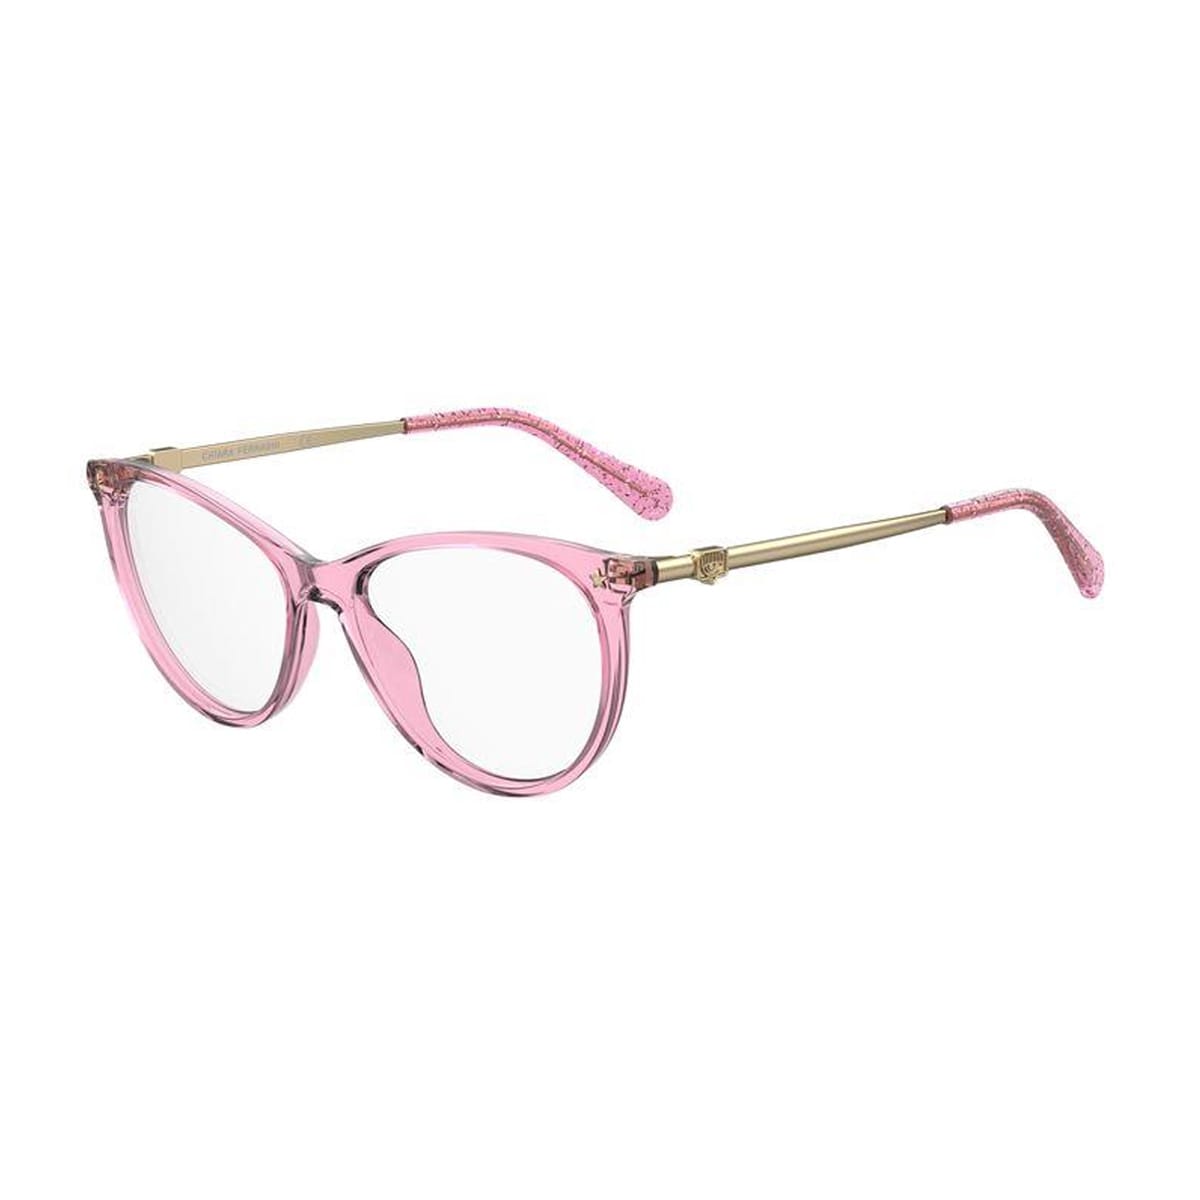 Chiara Ferragni 11ee4bl0a - -  Glasses In Rosa